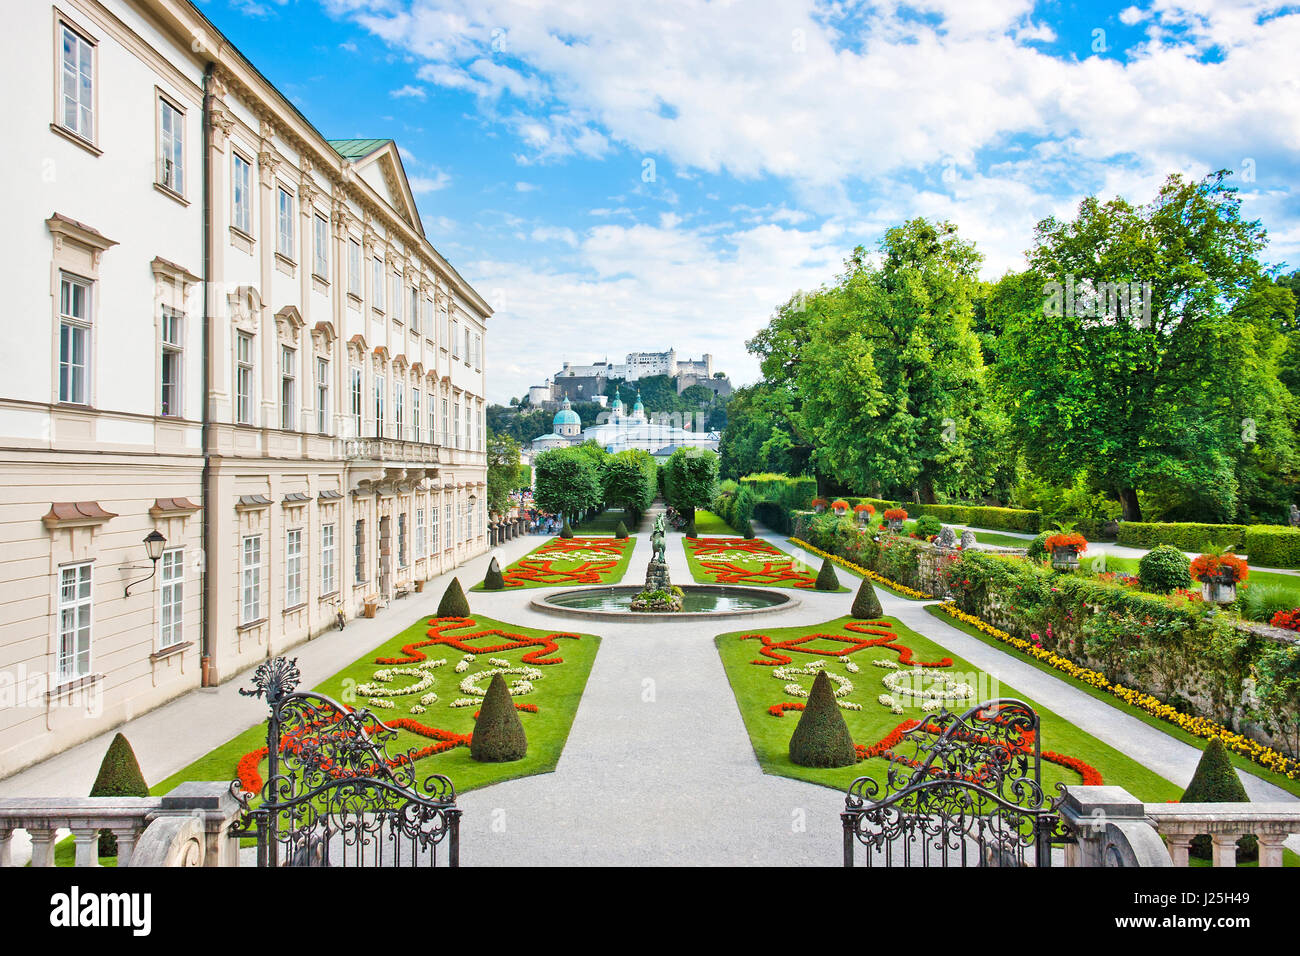 Belle vue sur les jardins Mirabell célèbre avec du palais Mirabell et de la vieille forteresse Hohensalzburg historique dans l'arrière-plan à Salzbourg, Autriche Banque D'Images